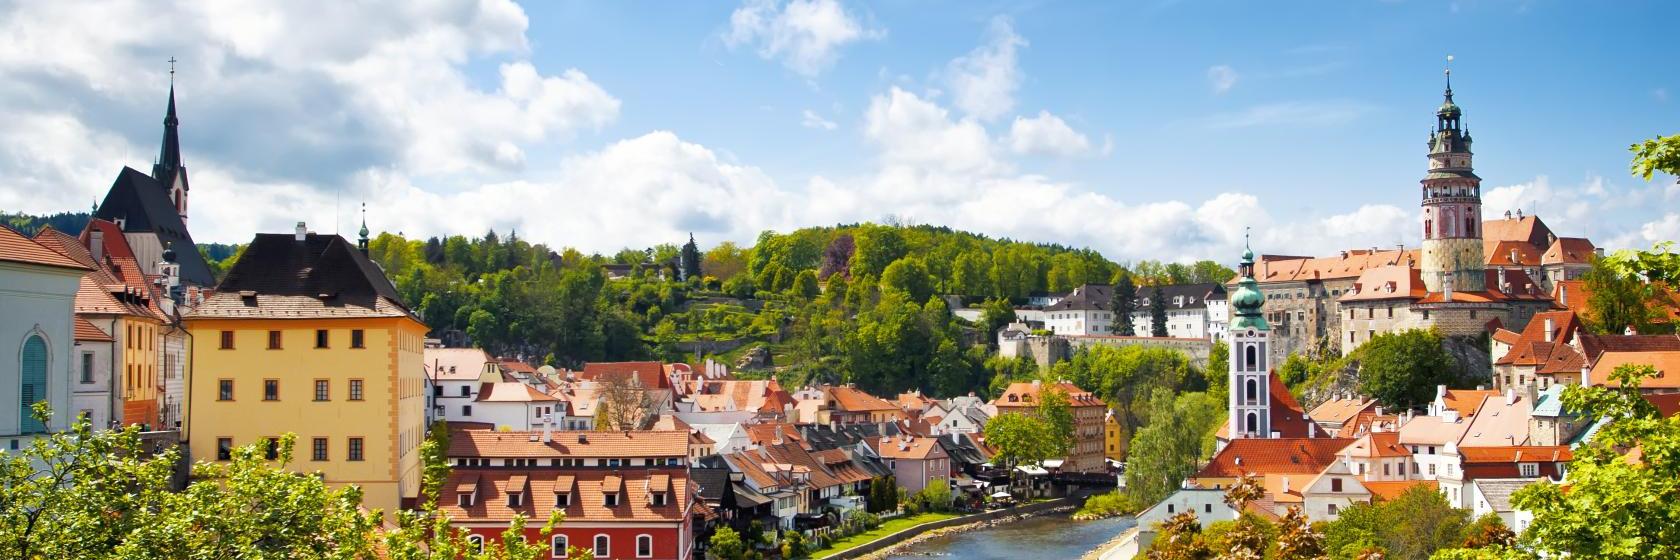 The 10 best hotels & places to stay in Český Krumlov, Czech Republic - Český  Krumlov hotels